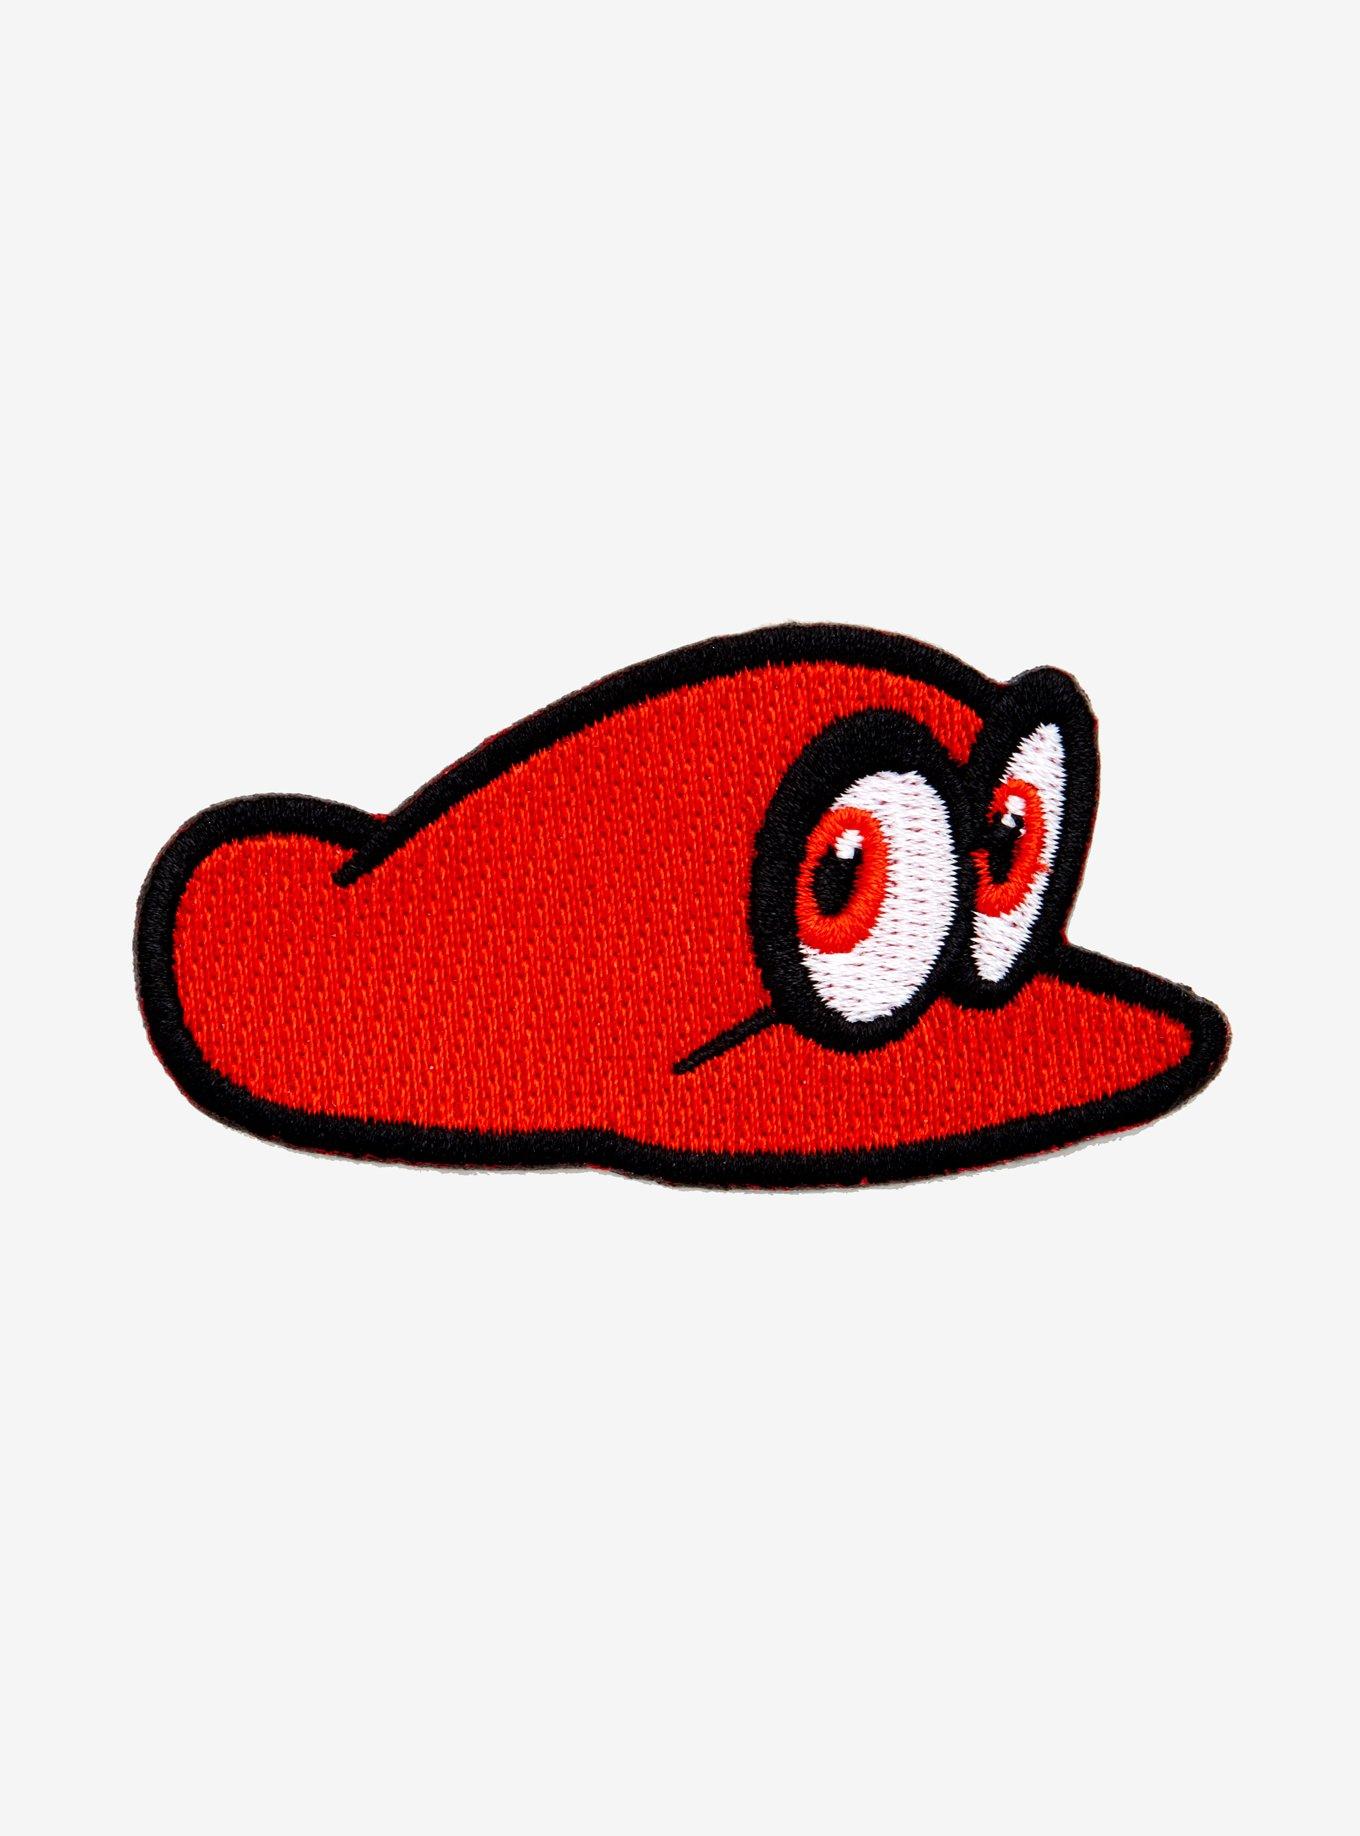 Super Mario Odyssey Cappy Patch, , hi-res